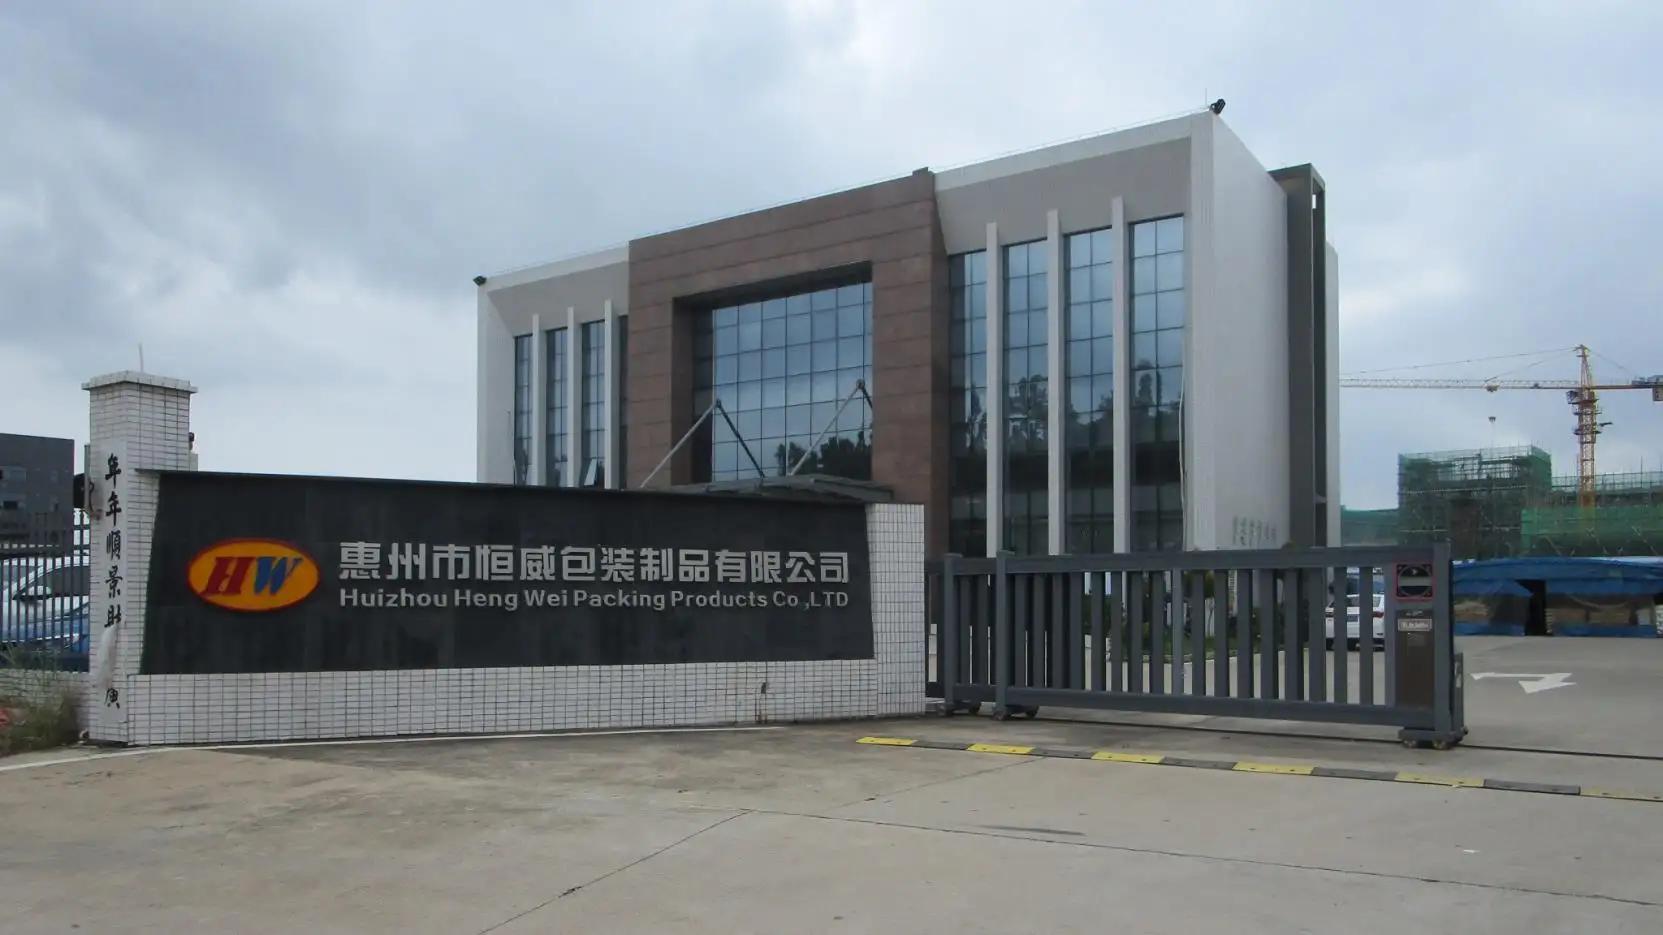 Huizhou Hengwei Packing products Co., Ltd